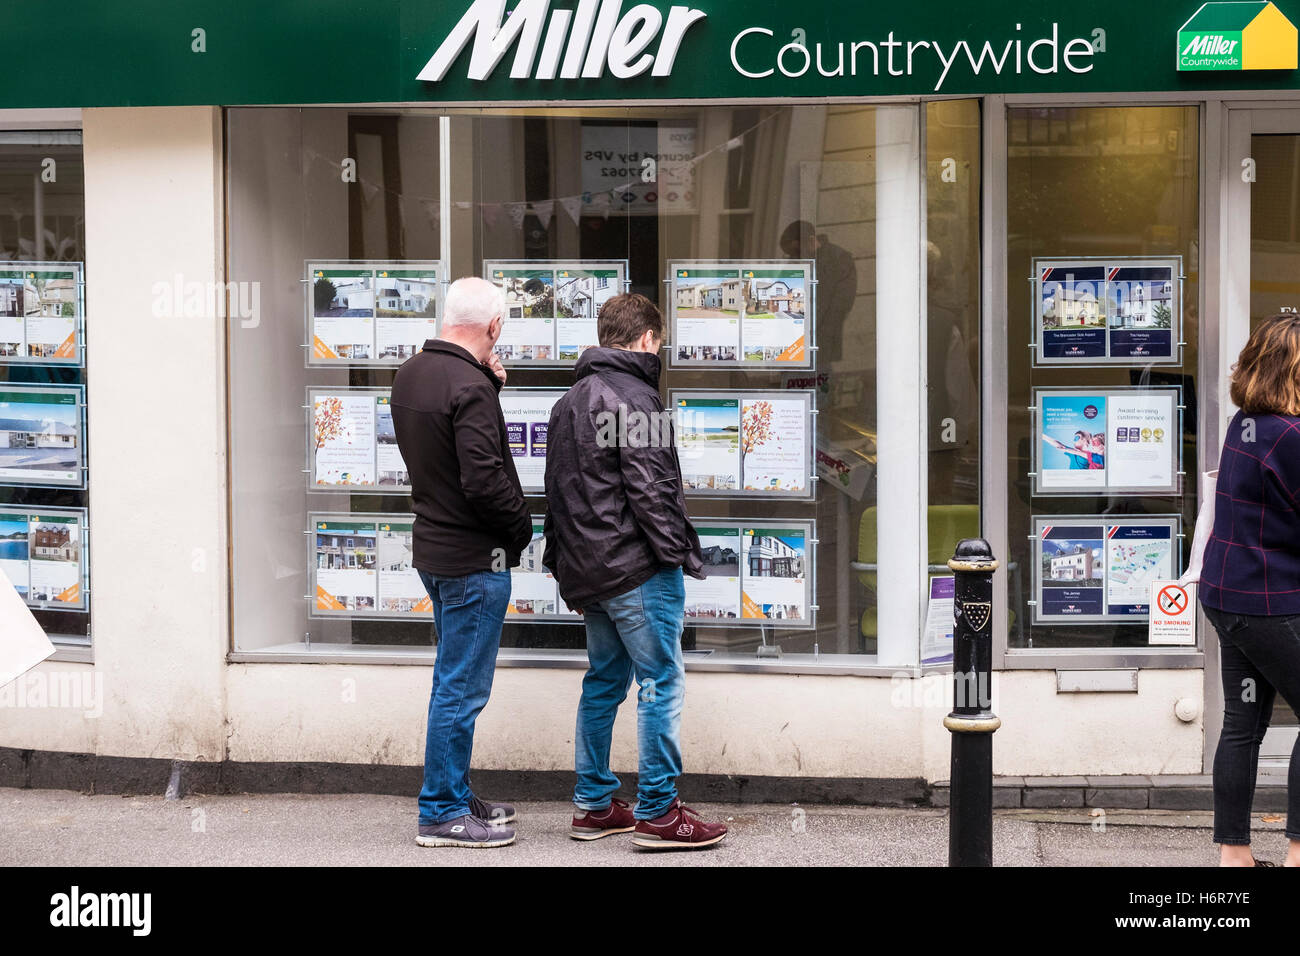 Personen, die Immobilieninformationen in einem Fenster für Immobilienmakler in einem Miller Countrywide Estate Agents in Falmouth, Cornwall, anzeigen. Stockfoto